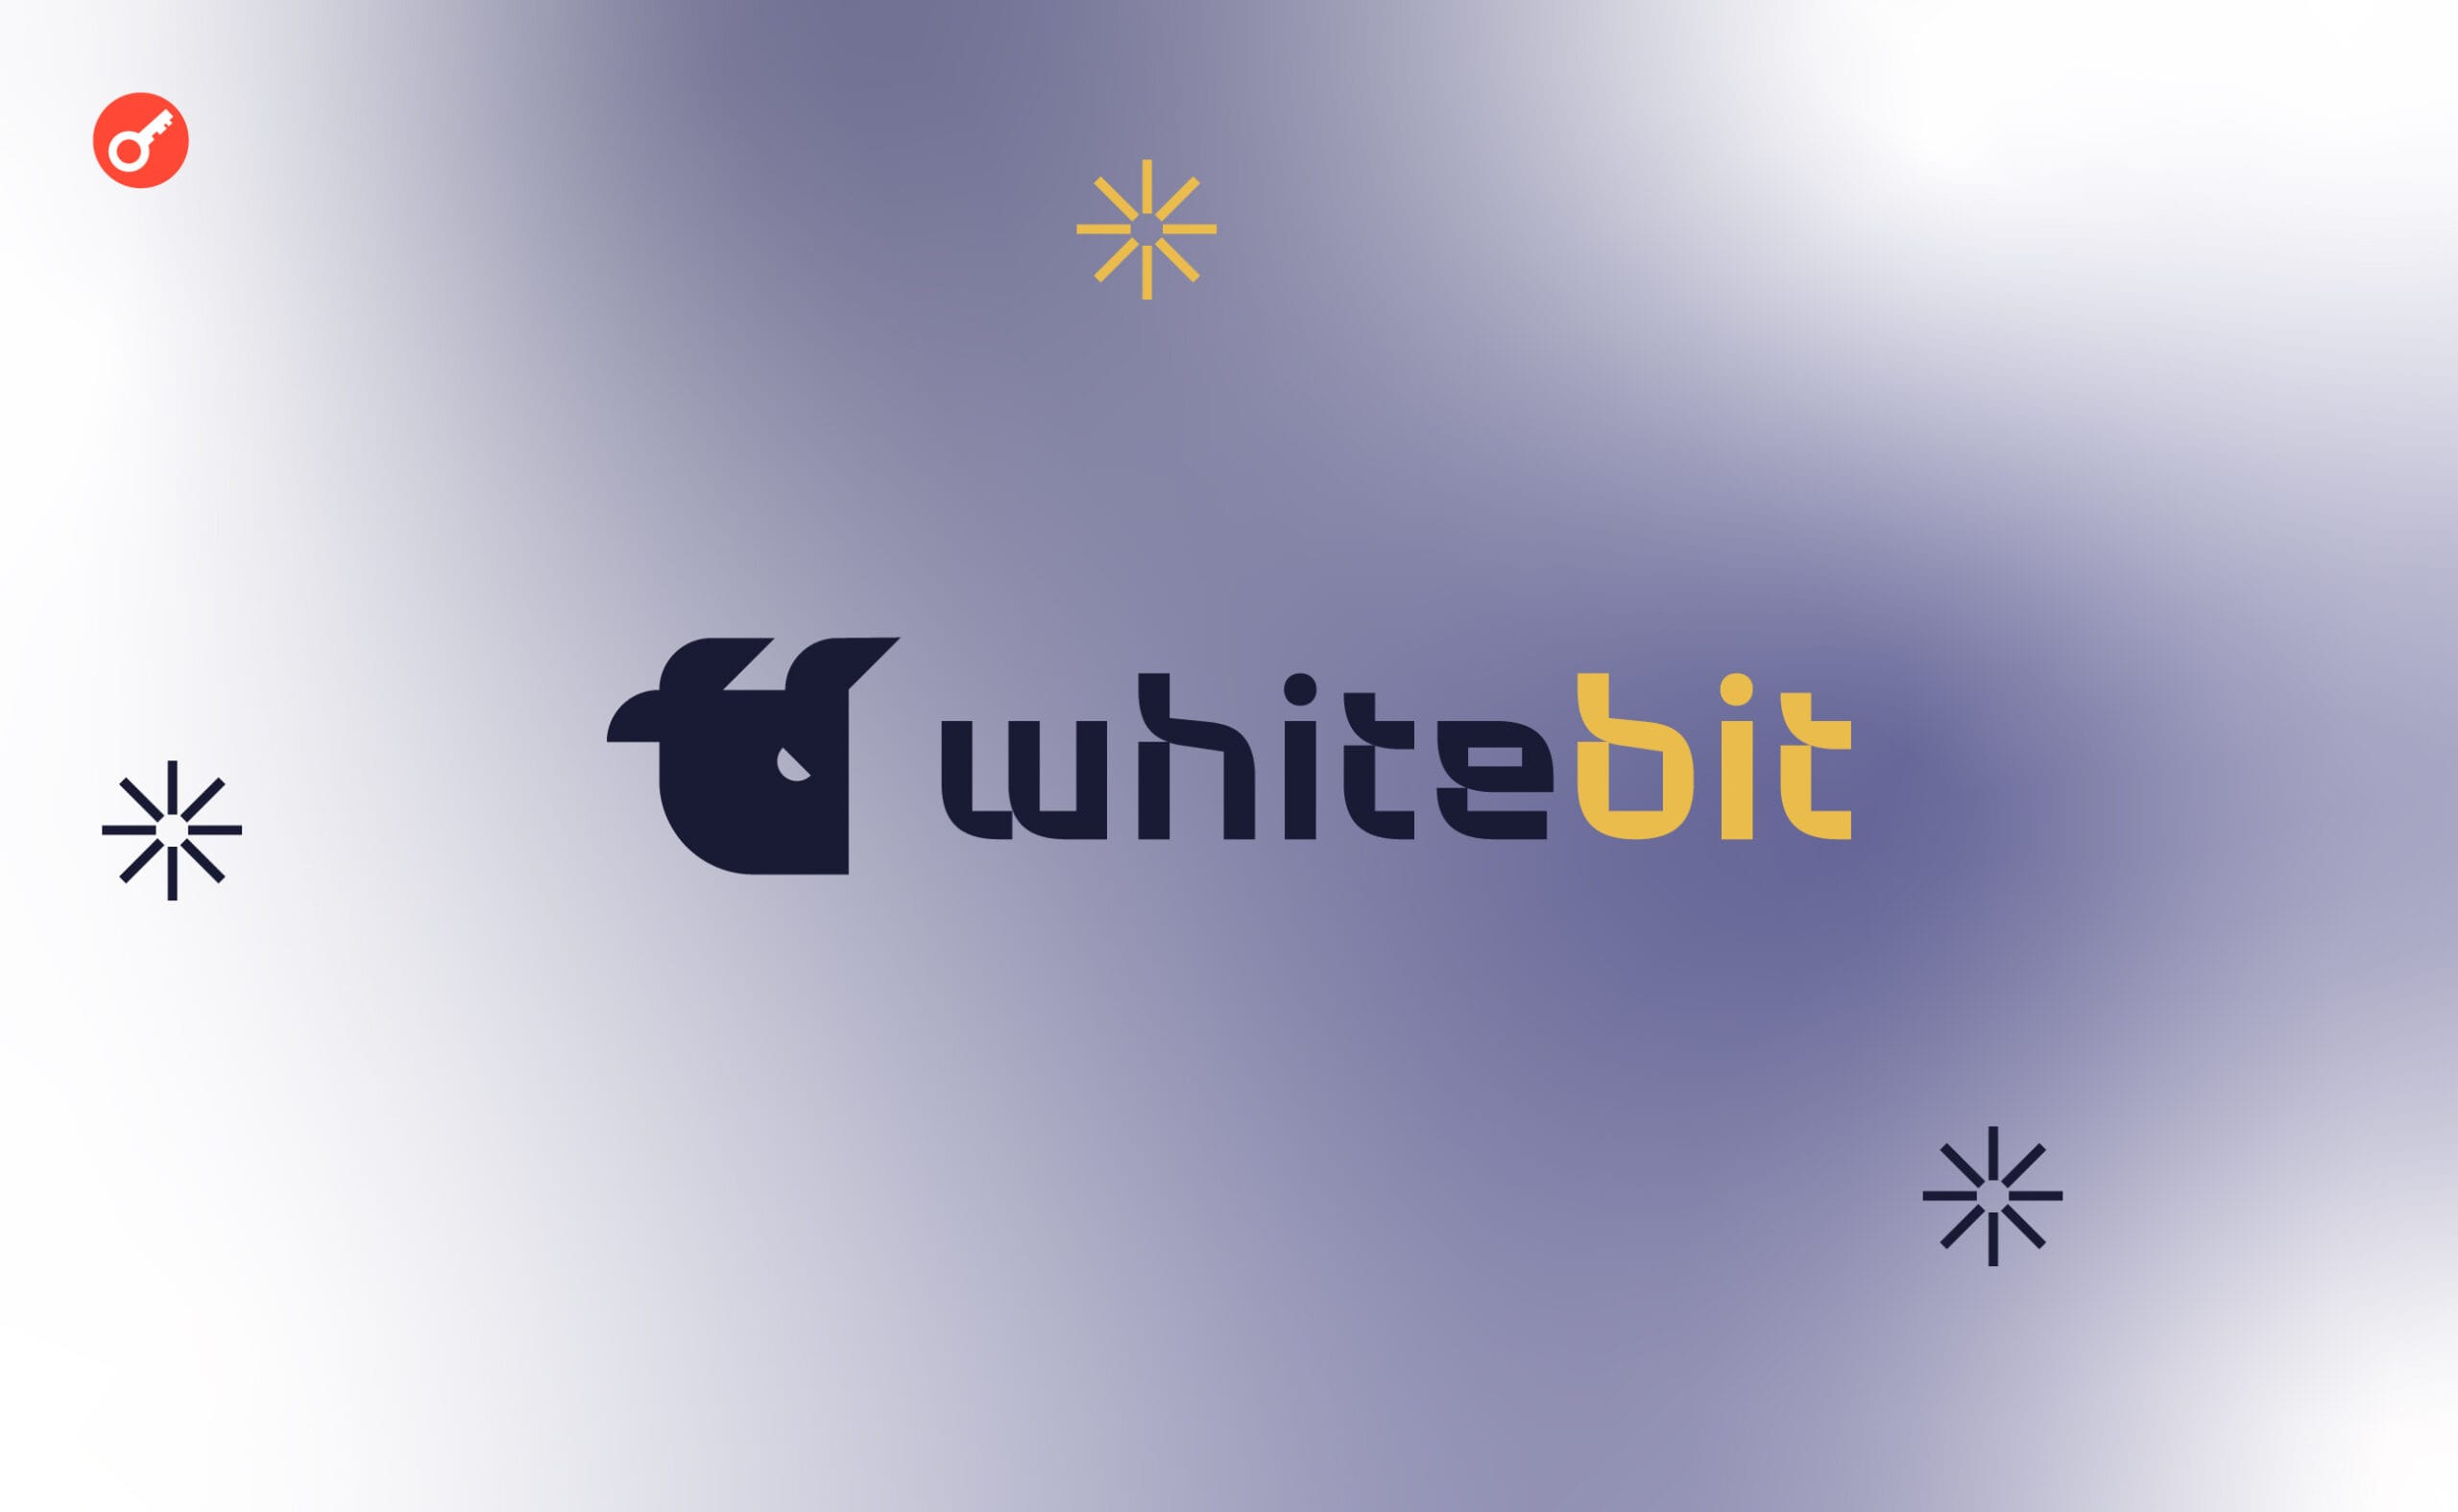 MSZ przy wsparciu WhiteBIT uruchomiło chatbota, aby pomóc obywatelom w sprawach konsularnych. Główny kolaż wiadomości.